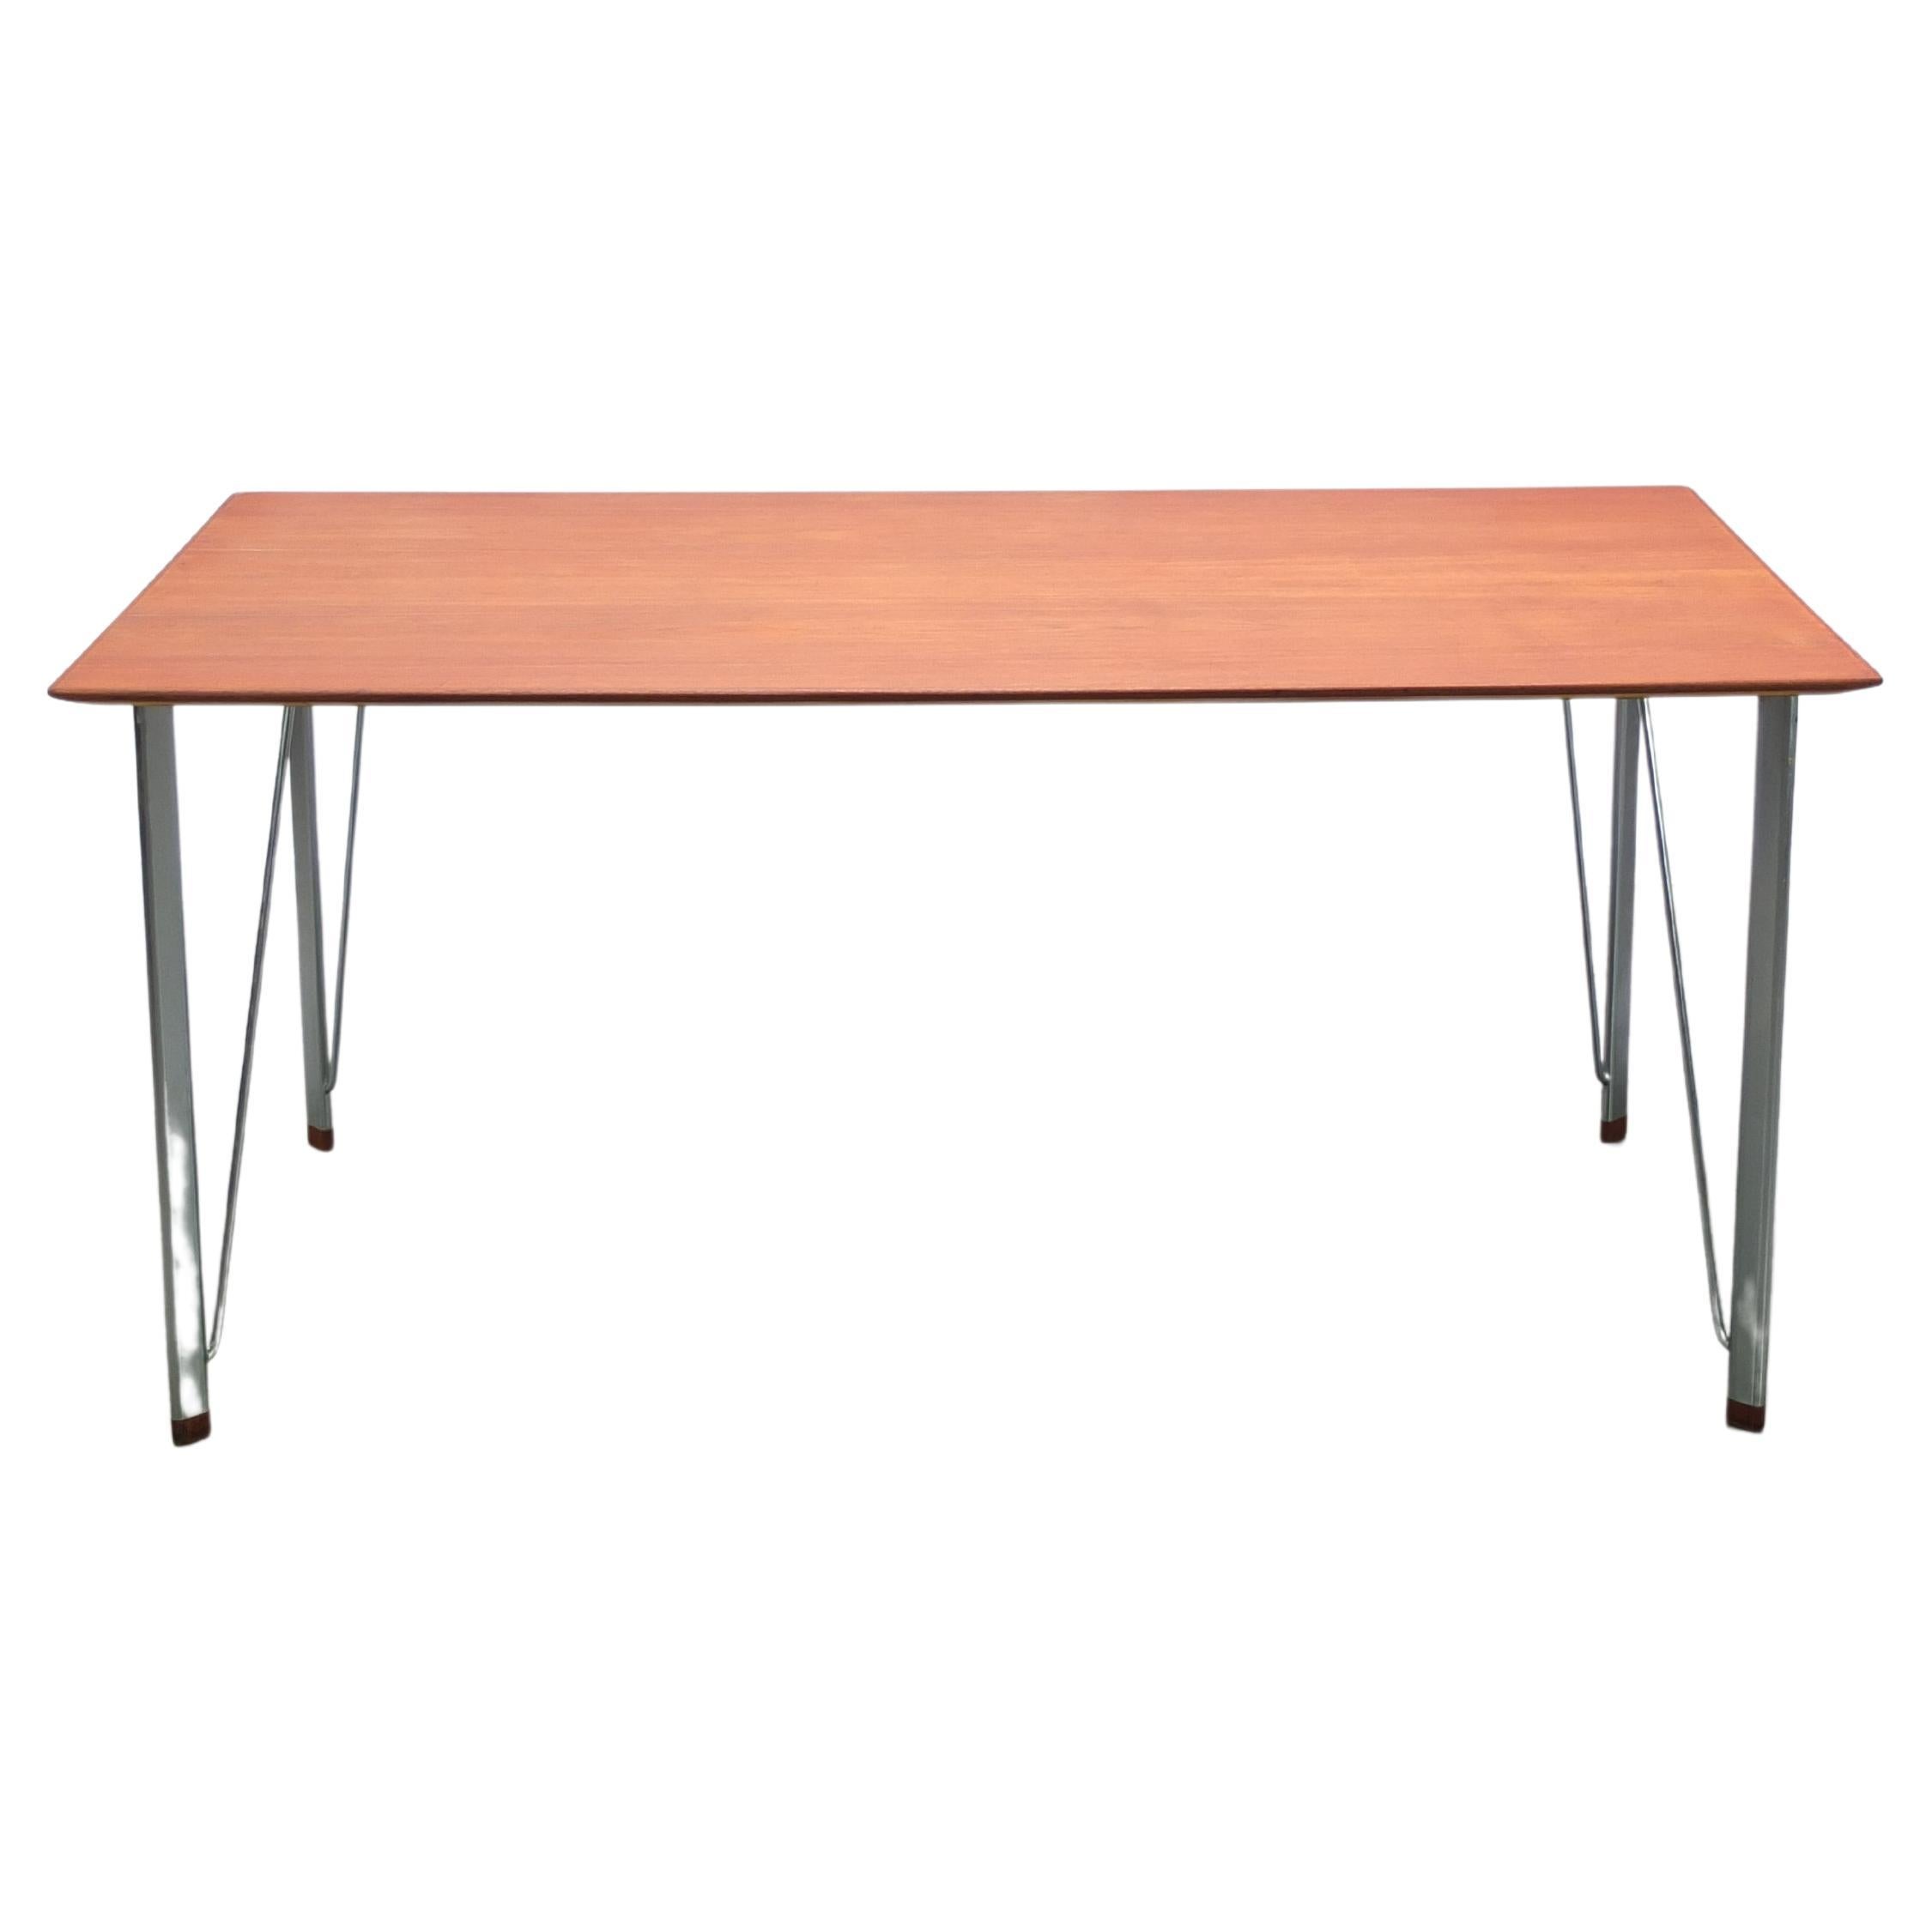 Early Teak 'Model 3605' Table by Arne Jacobsen for Fritz Hansen, 1950s For Sale